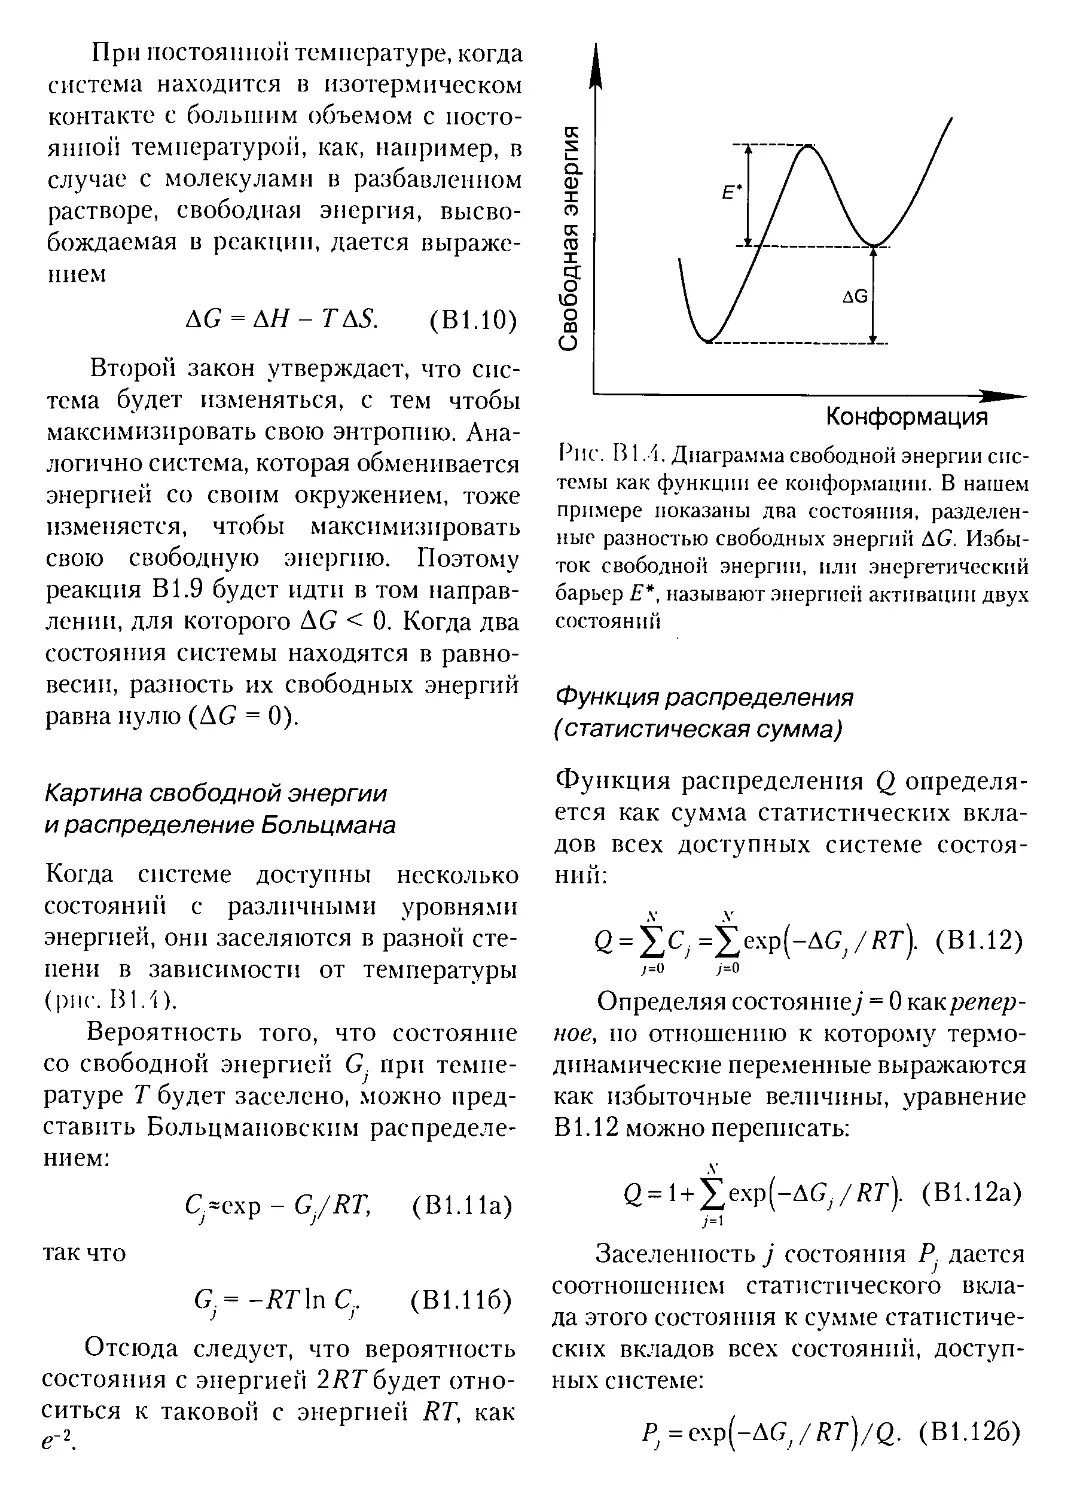 Глава В 2. Дифференциальная сканирующая калориметрия
В2.2. Основы теории
В2.3. Экспериментальные подходы